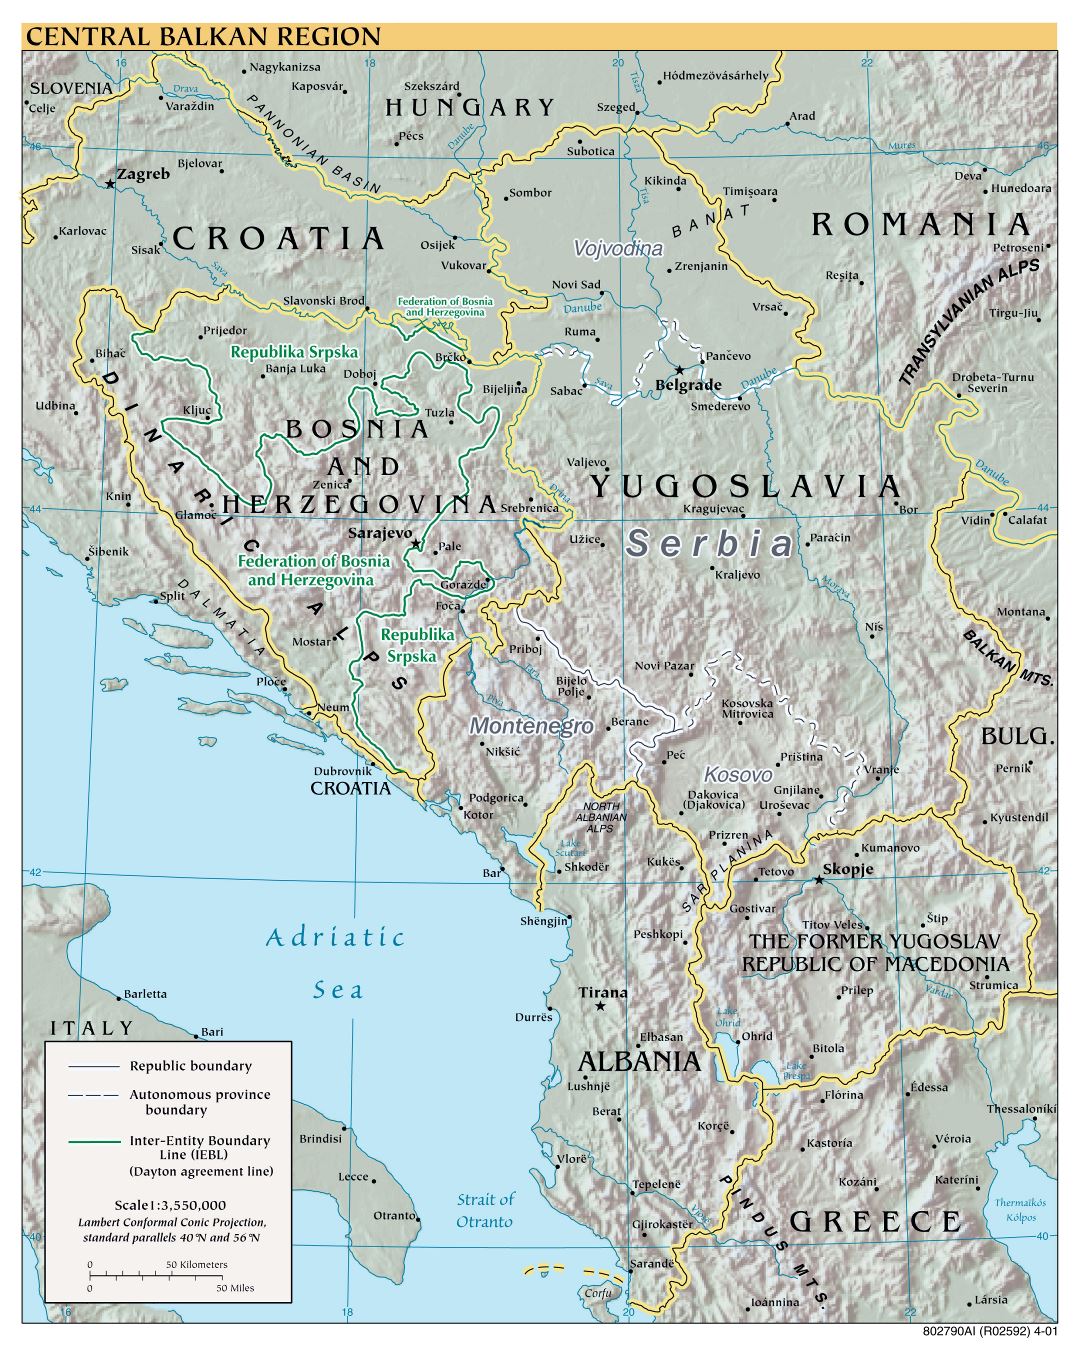 Mapa a gran escala política de la región central de los Balcanes con alivio - 2001